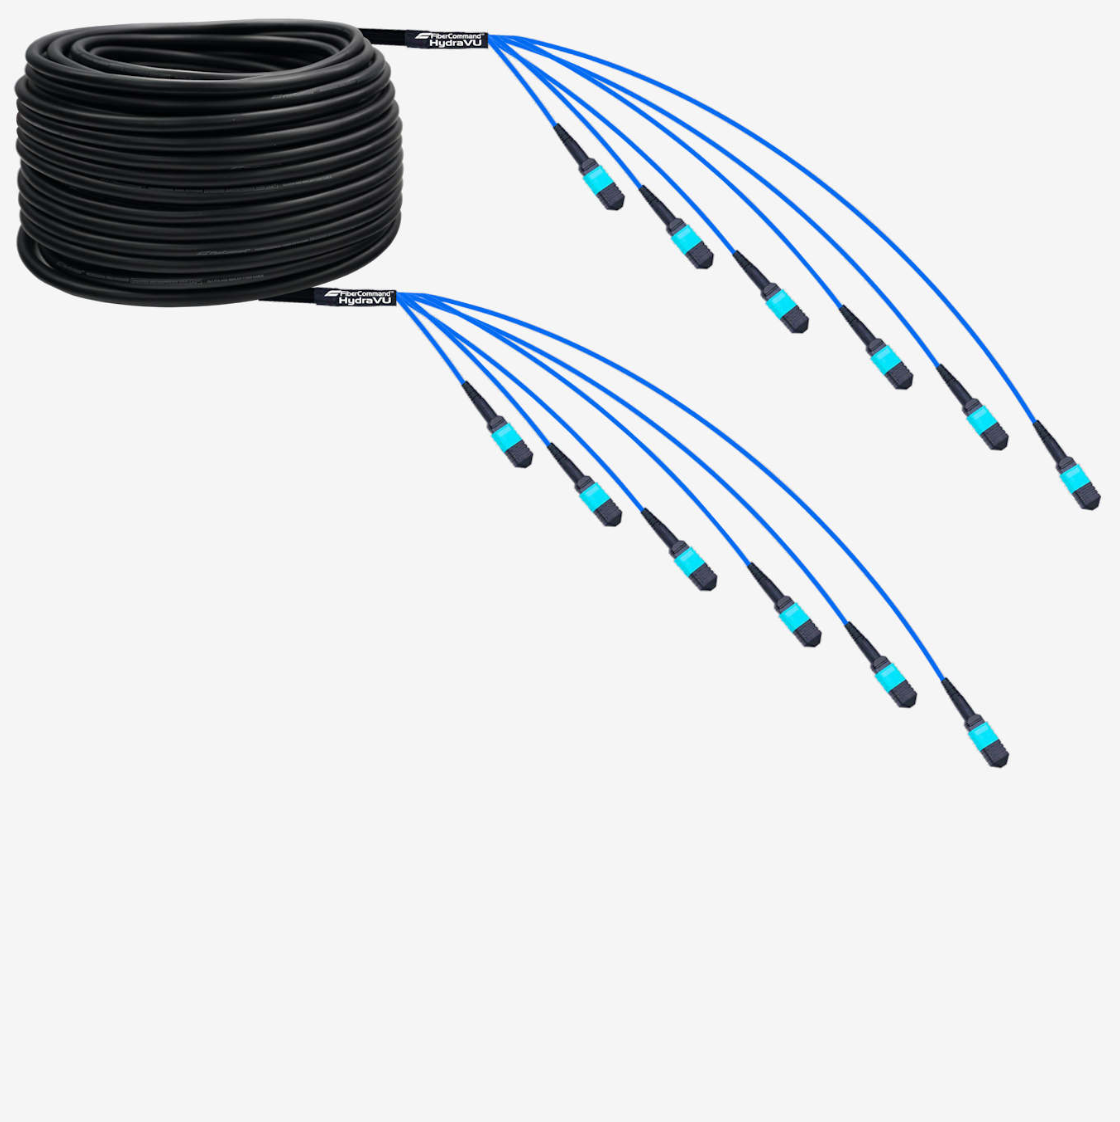 Hydraview® 36 | Fiberoptisk kabel 36 trådar förterminerade med 6 MPO